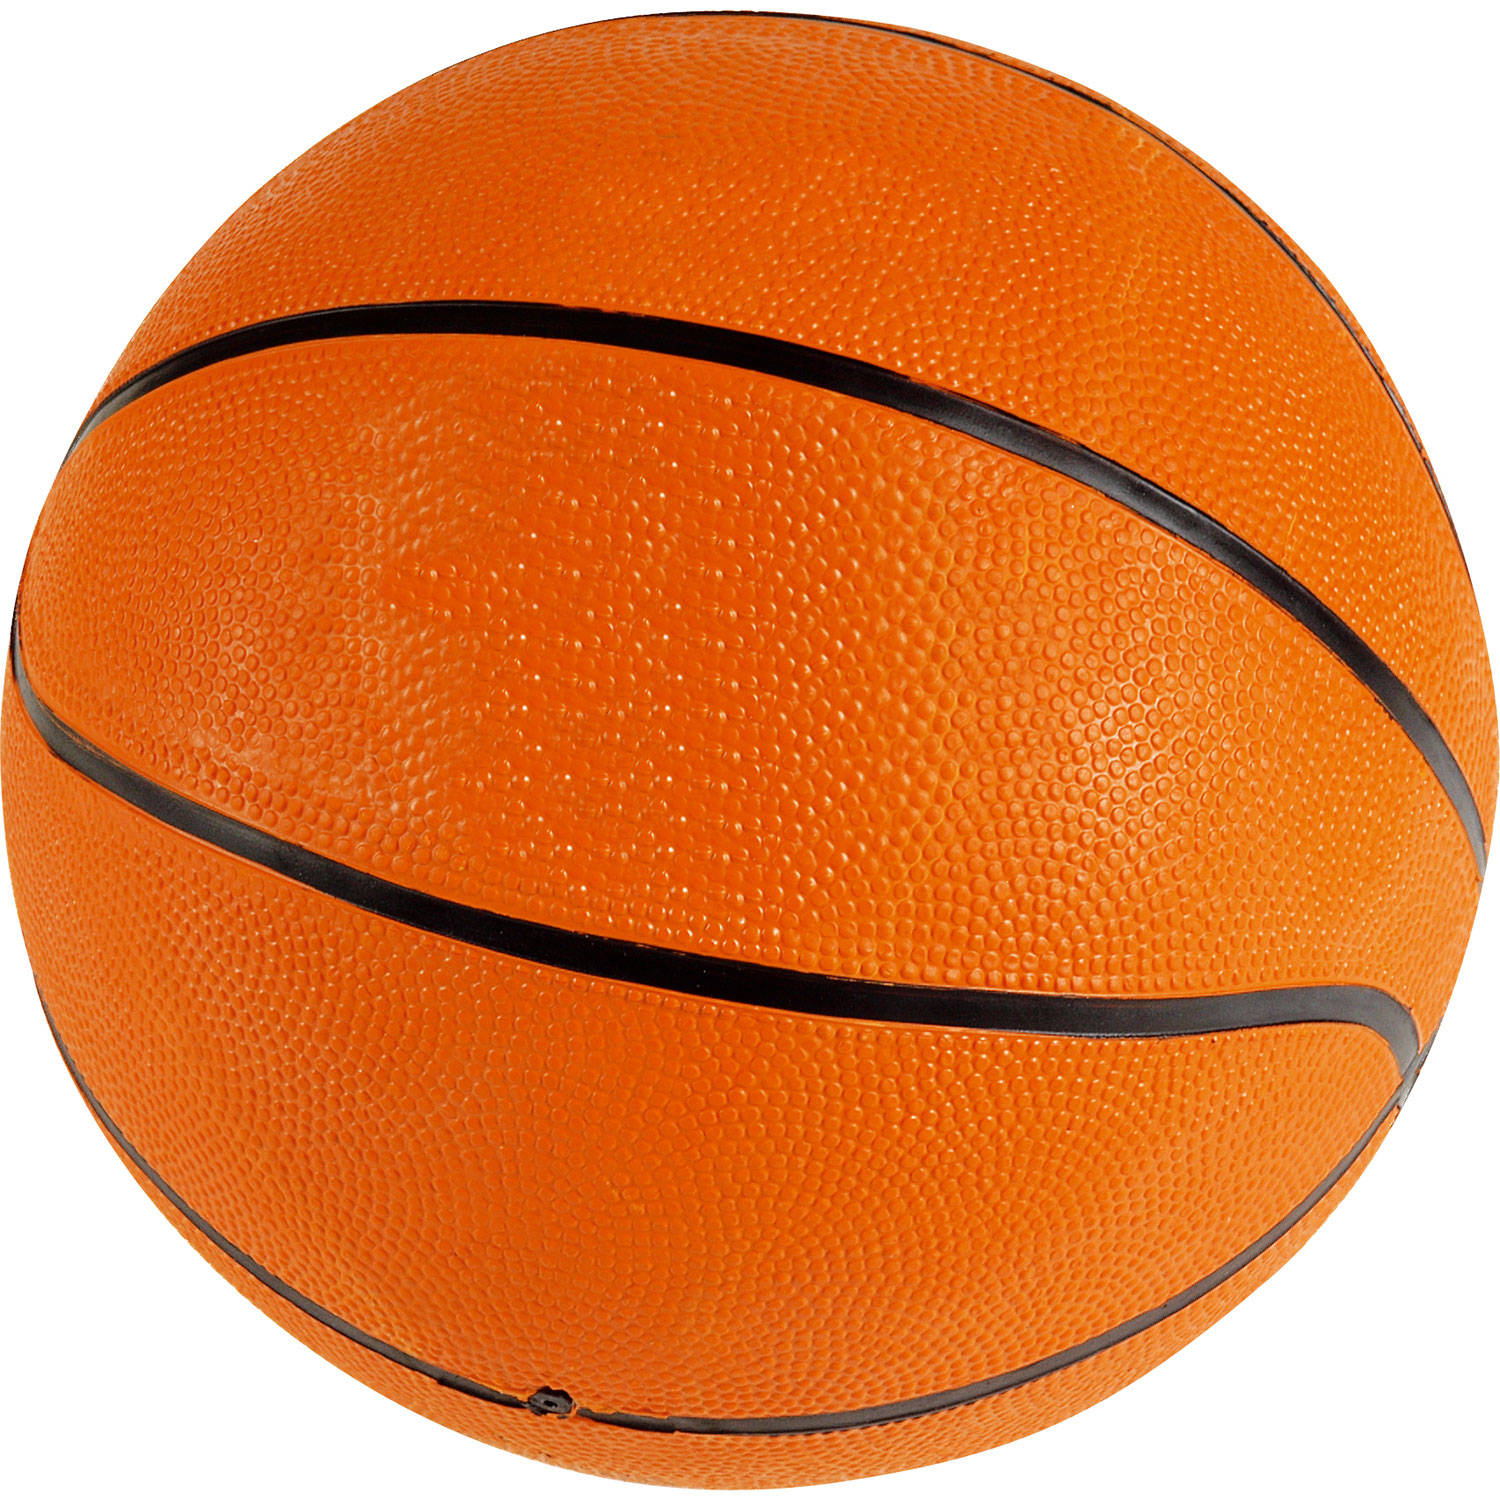 Bandito Basketball Size 7 Stuk